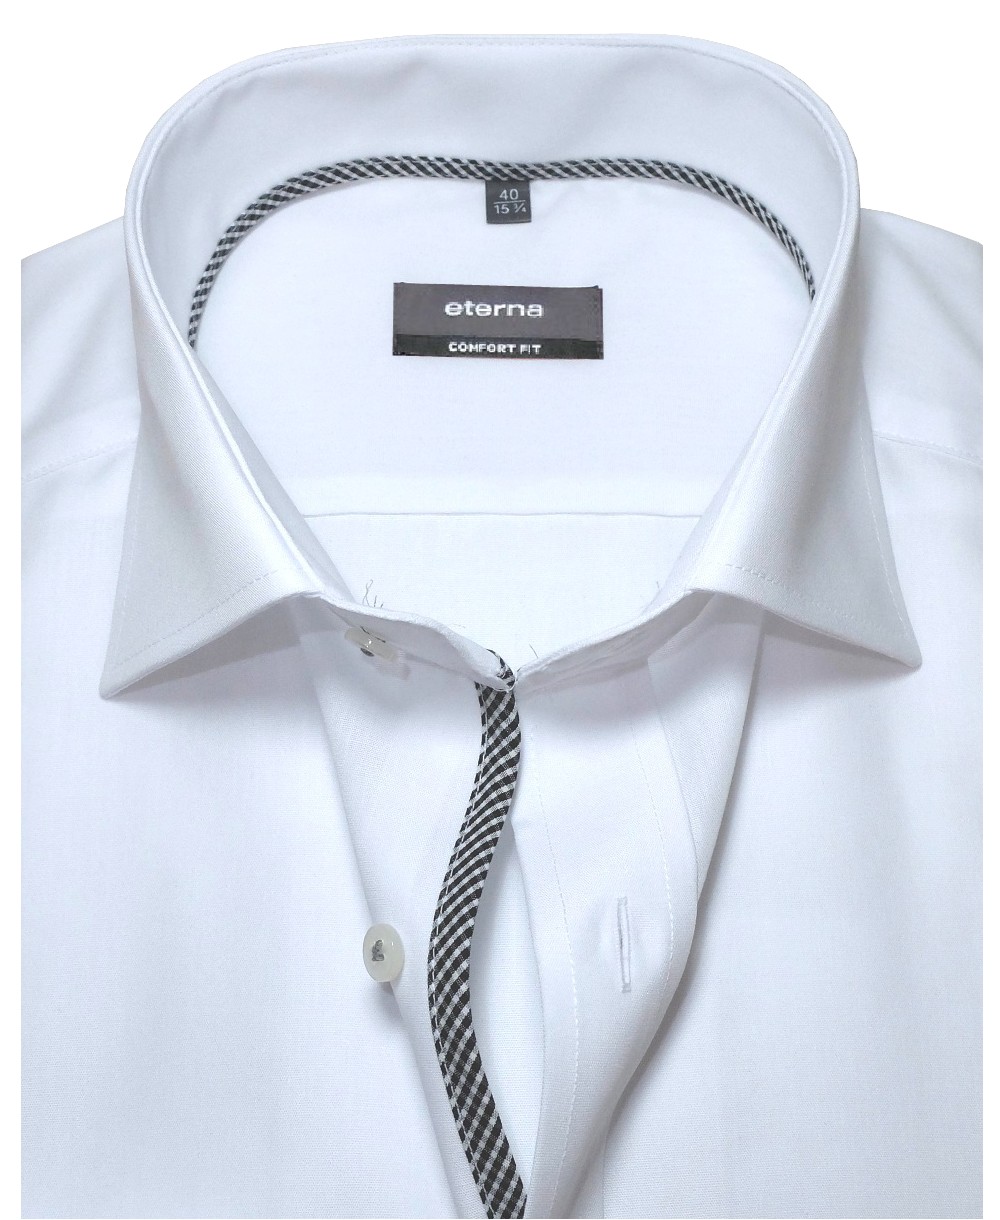 Fit modischen Hochwertige eterna zu weiss in Herrenmode führender fairen Comfort mit - Langarmhemd Marken Details